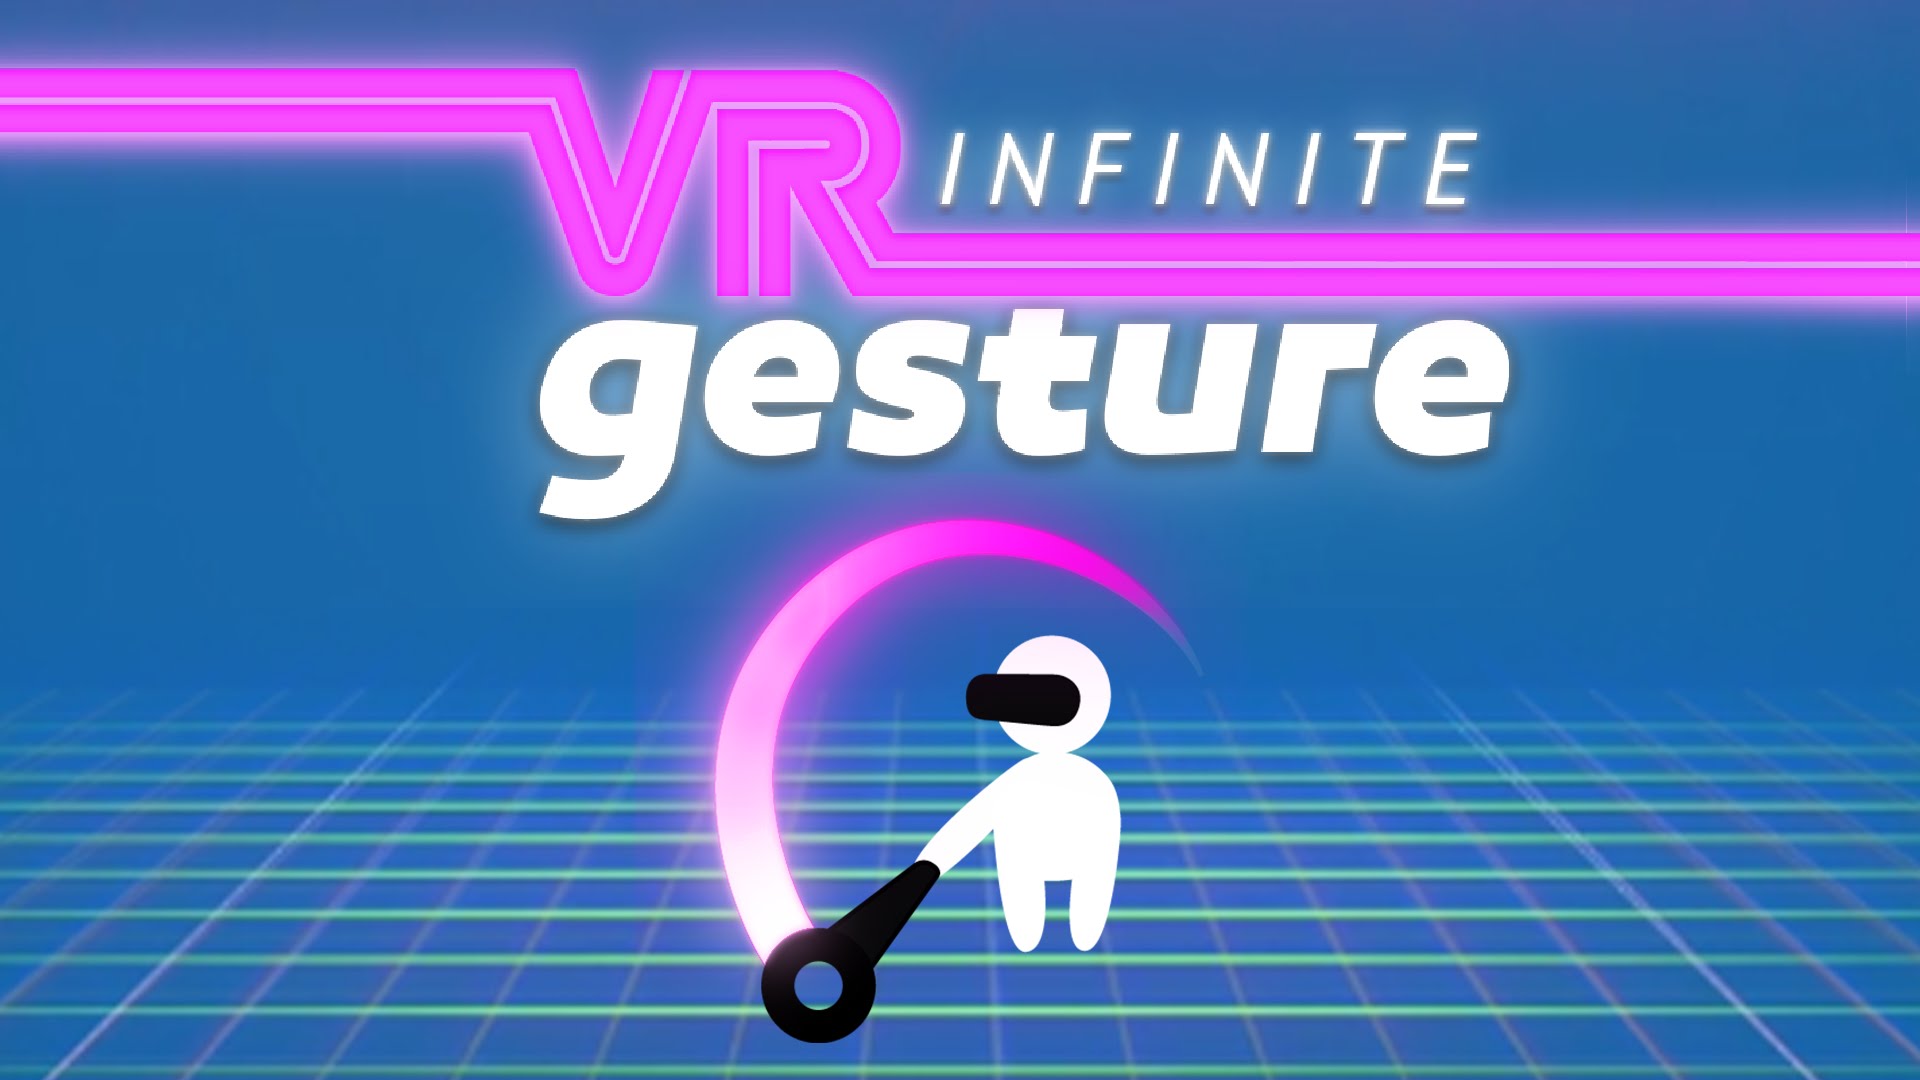 VR Infinite Gesture